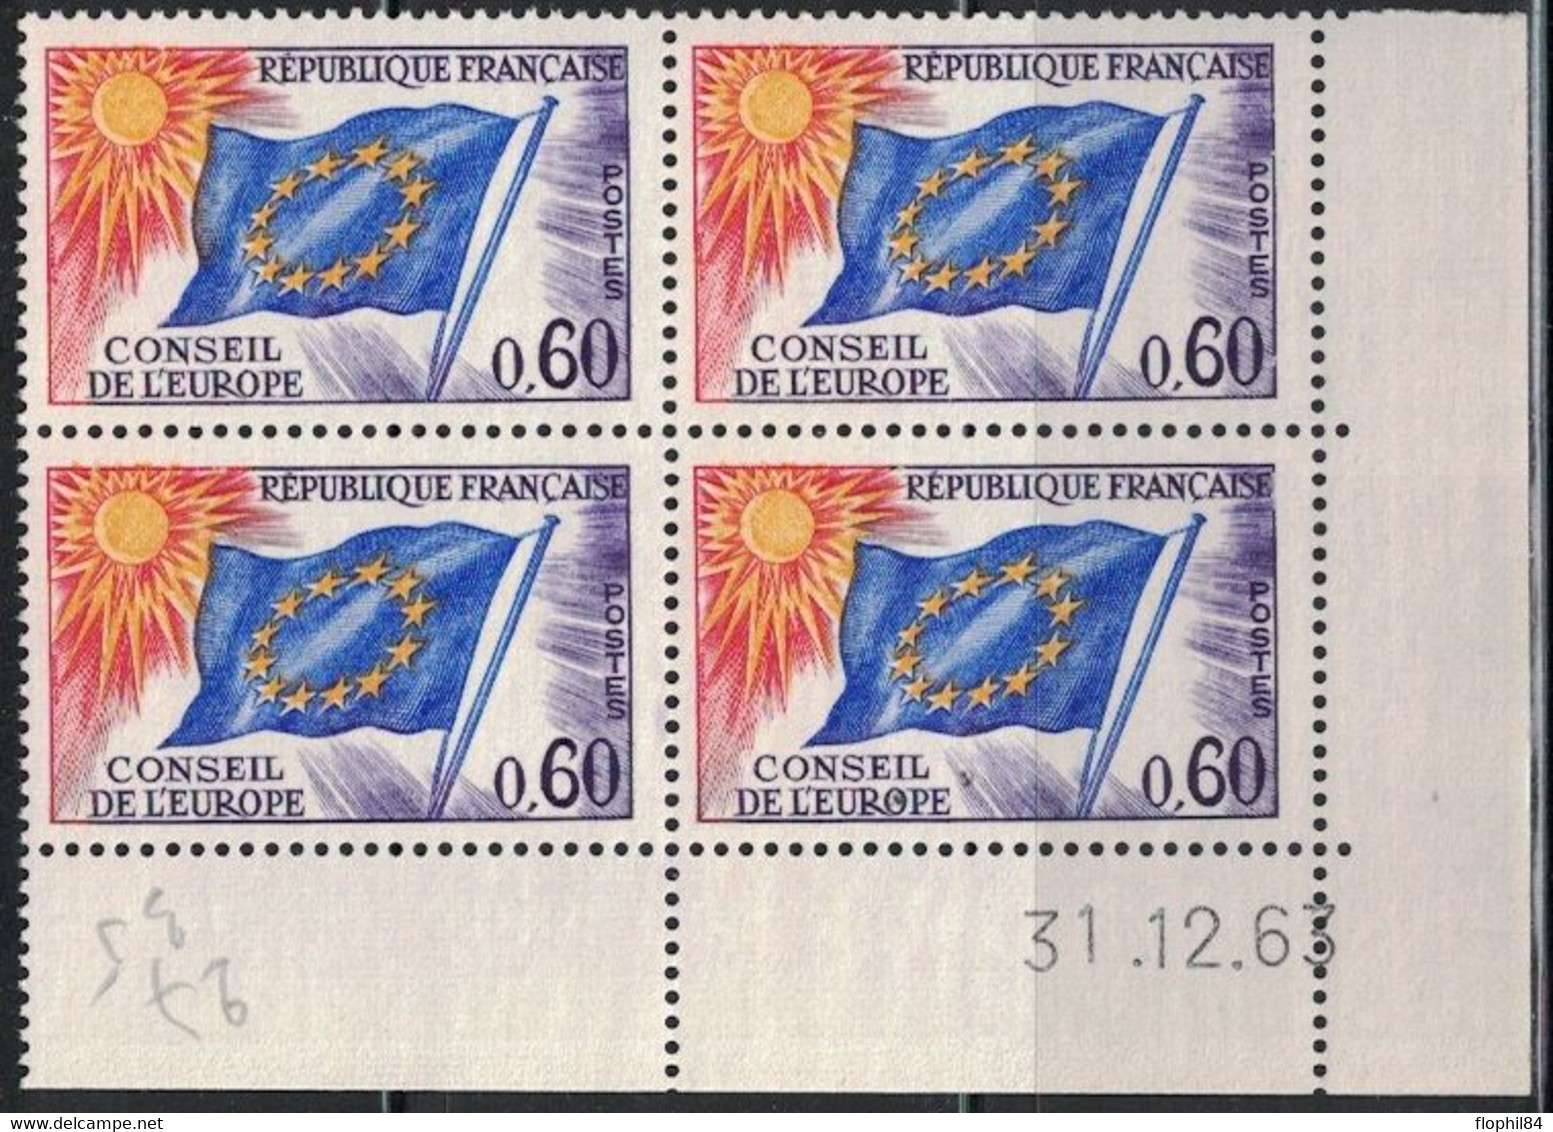 COIN DATE - SERVICE N°34 - 0f60 - CONSEIL DE L'EUROPE - 31-12-1963 - Cote 7€50. - Servicio